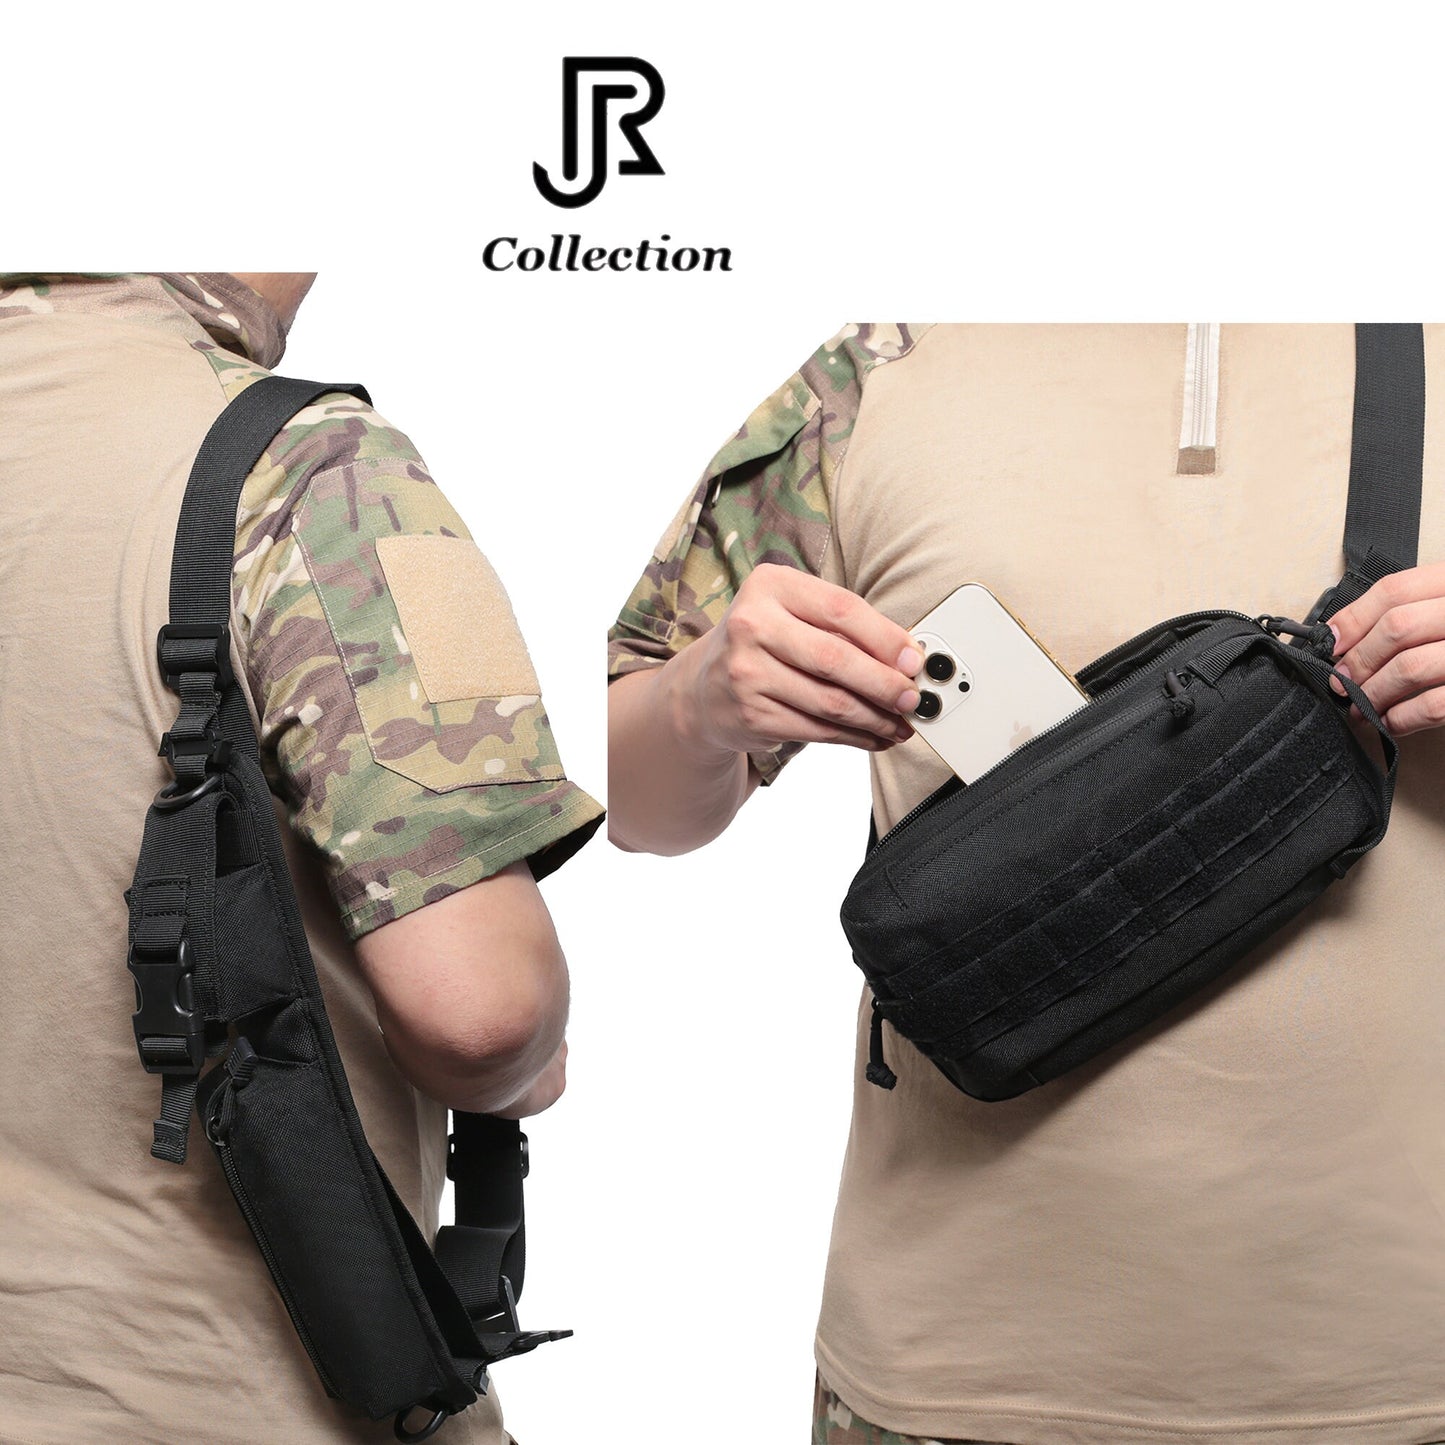 Fashionable Shoulder Bag, Tactical Backpack Shoulder Strap, Punch key, Chest Bag, Sling Cross Bag, New Casual Handbag, Travel Phone Bag